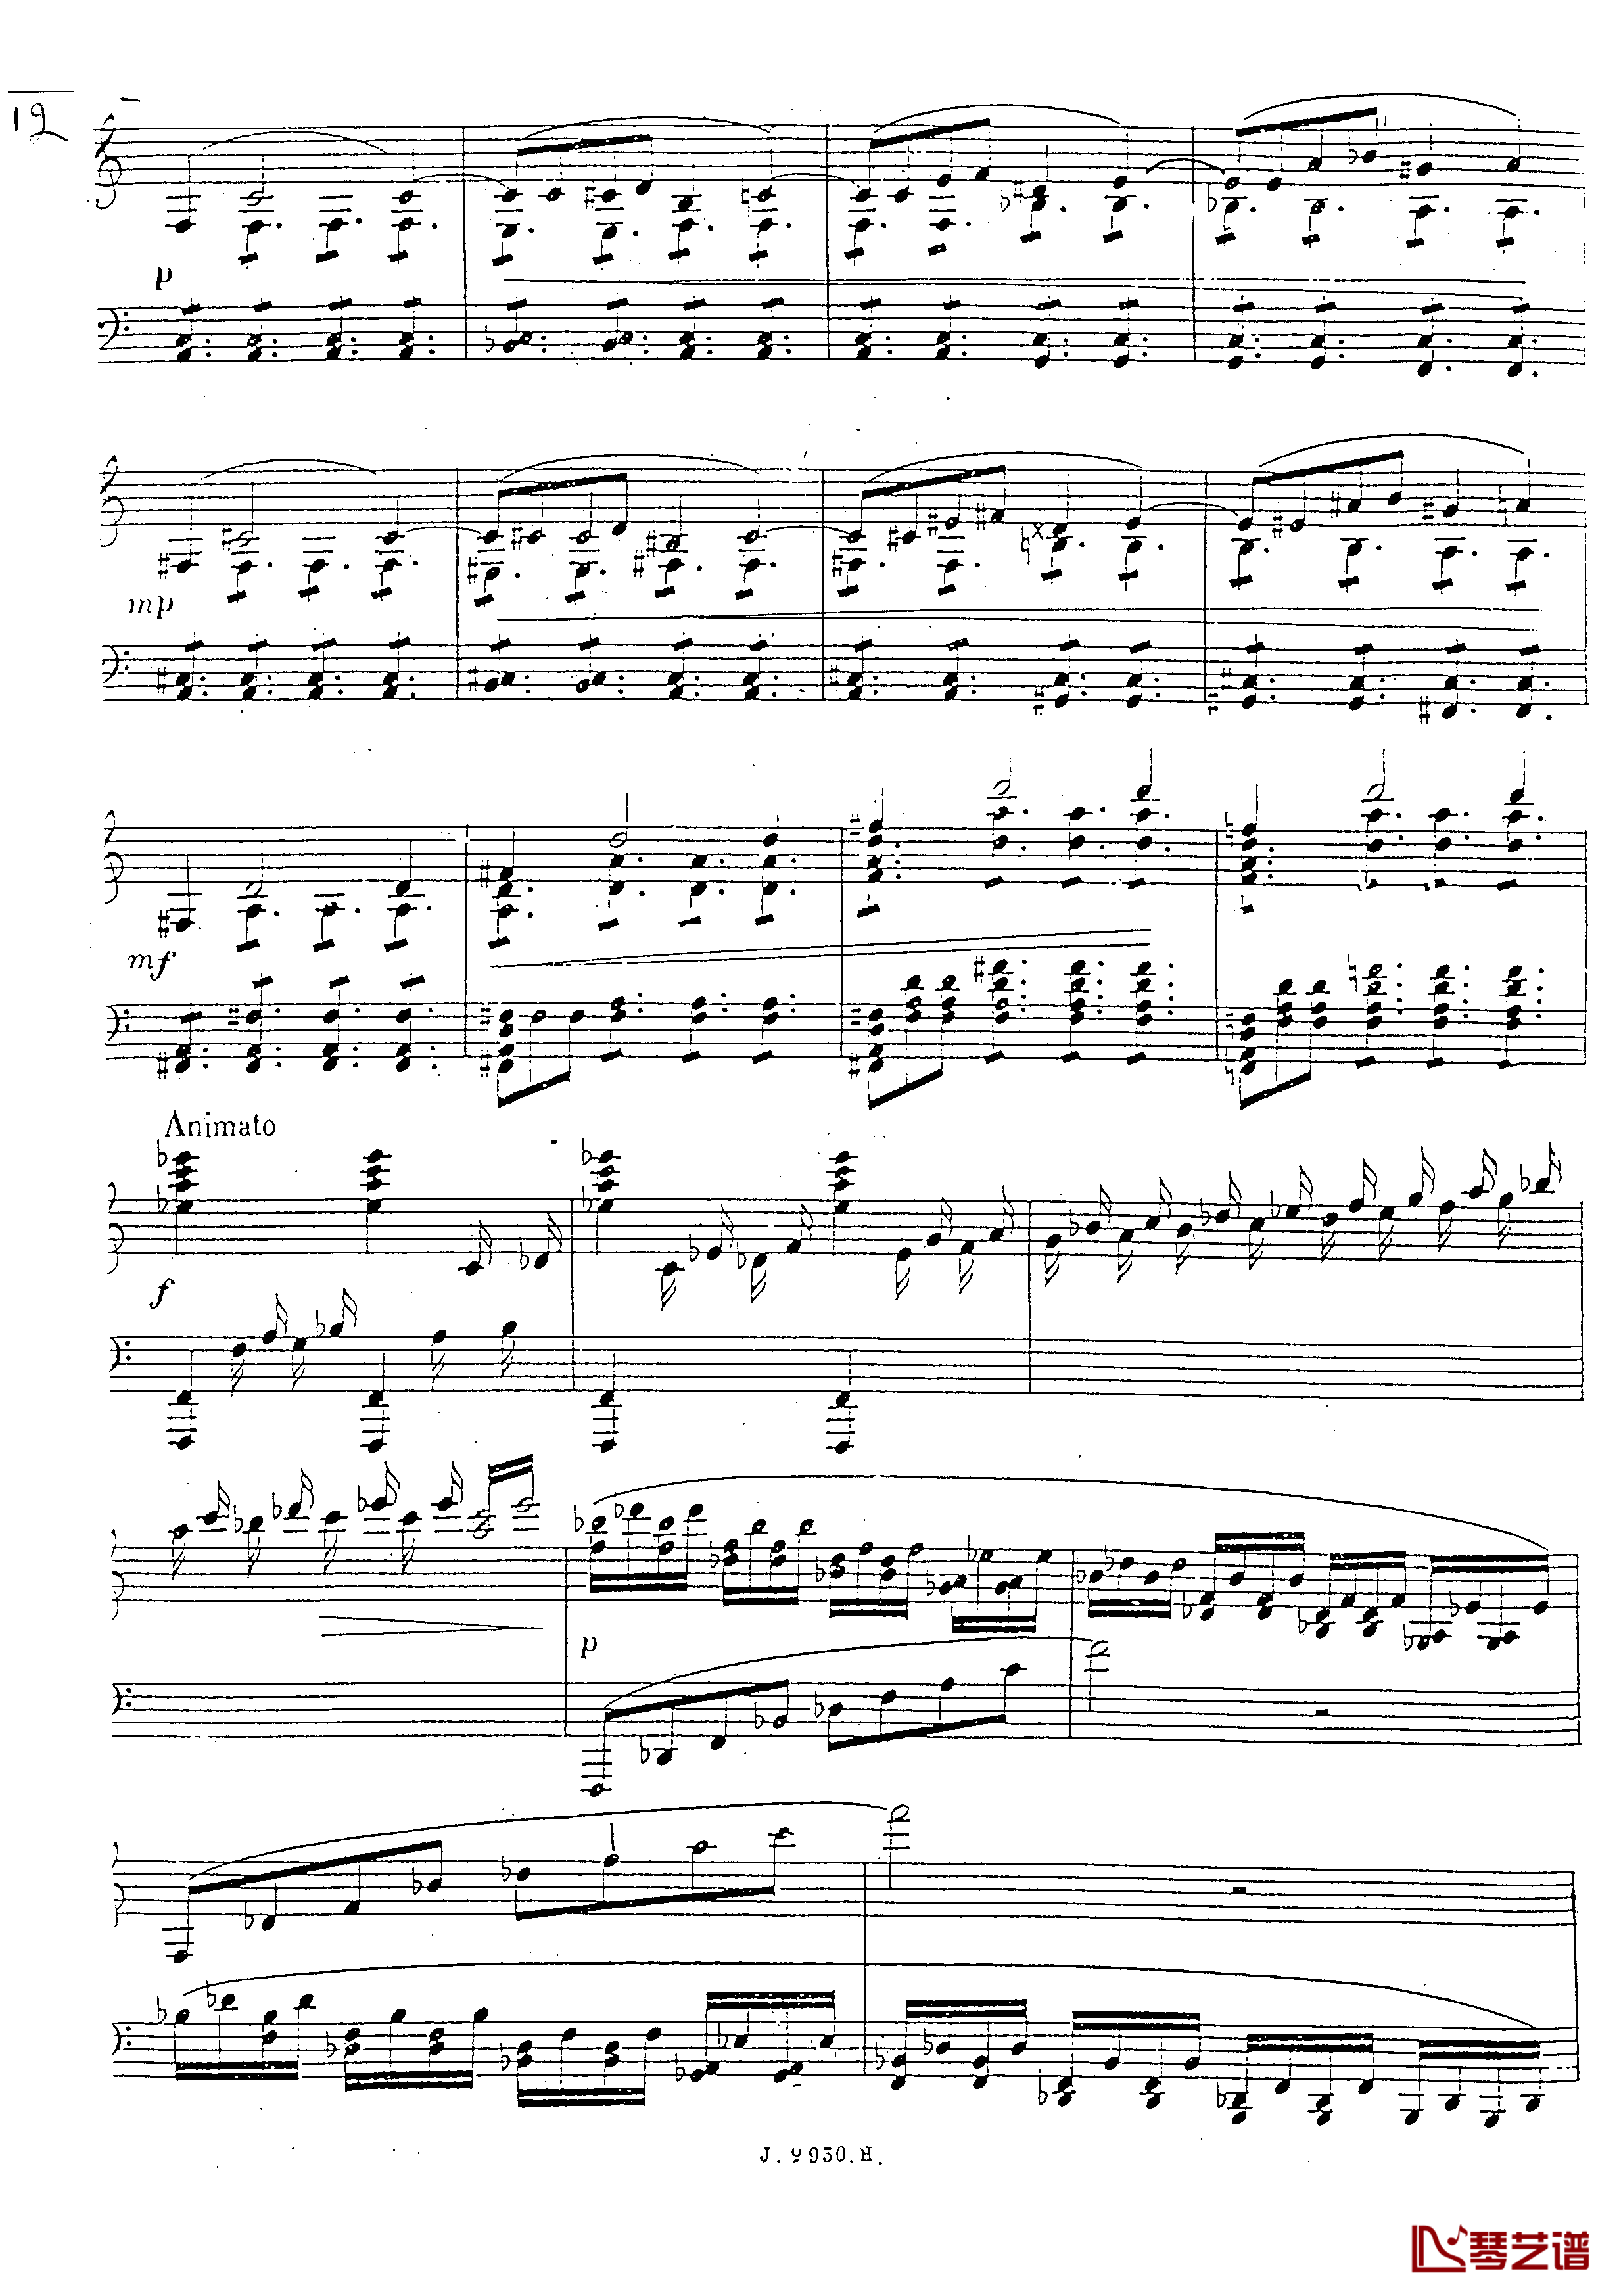 a小调第四钢琴奏鸣曲钢琴谱-安东 鲁宾斯坦- Op.10013